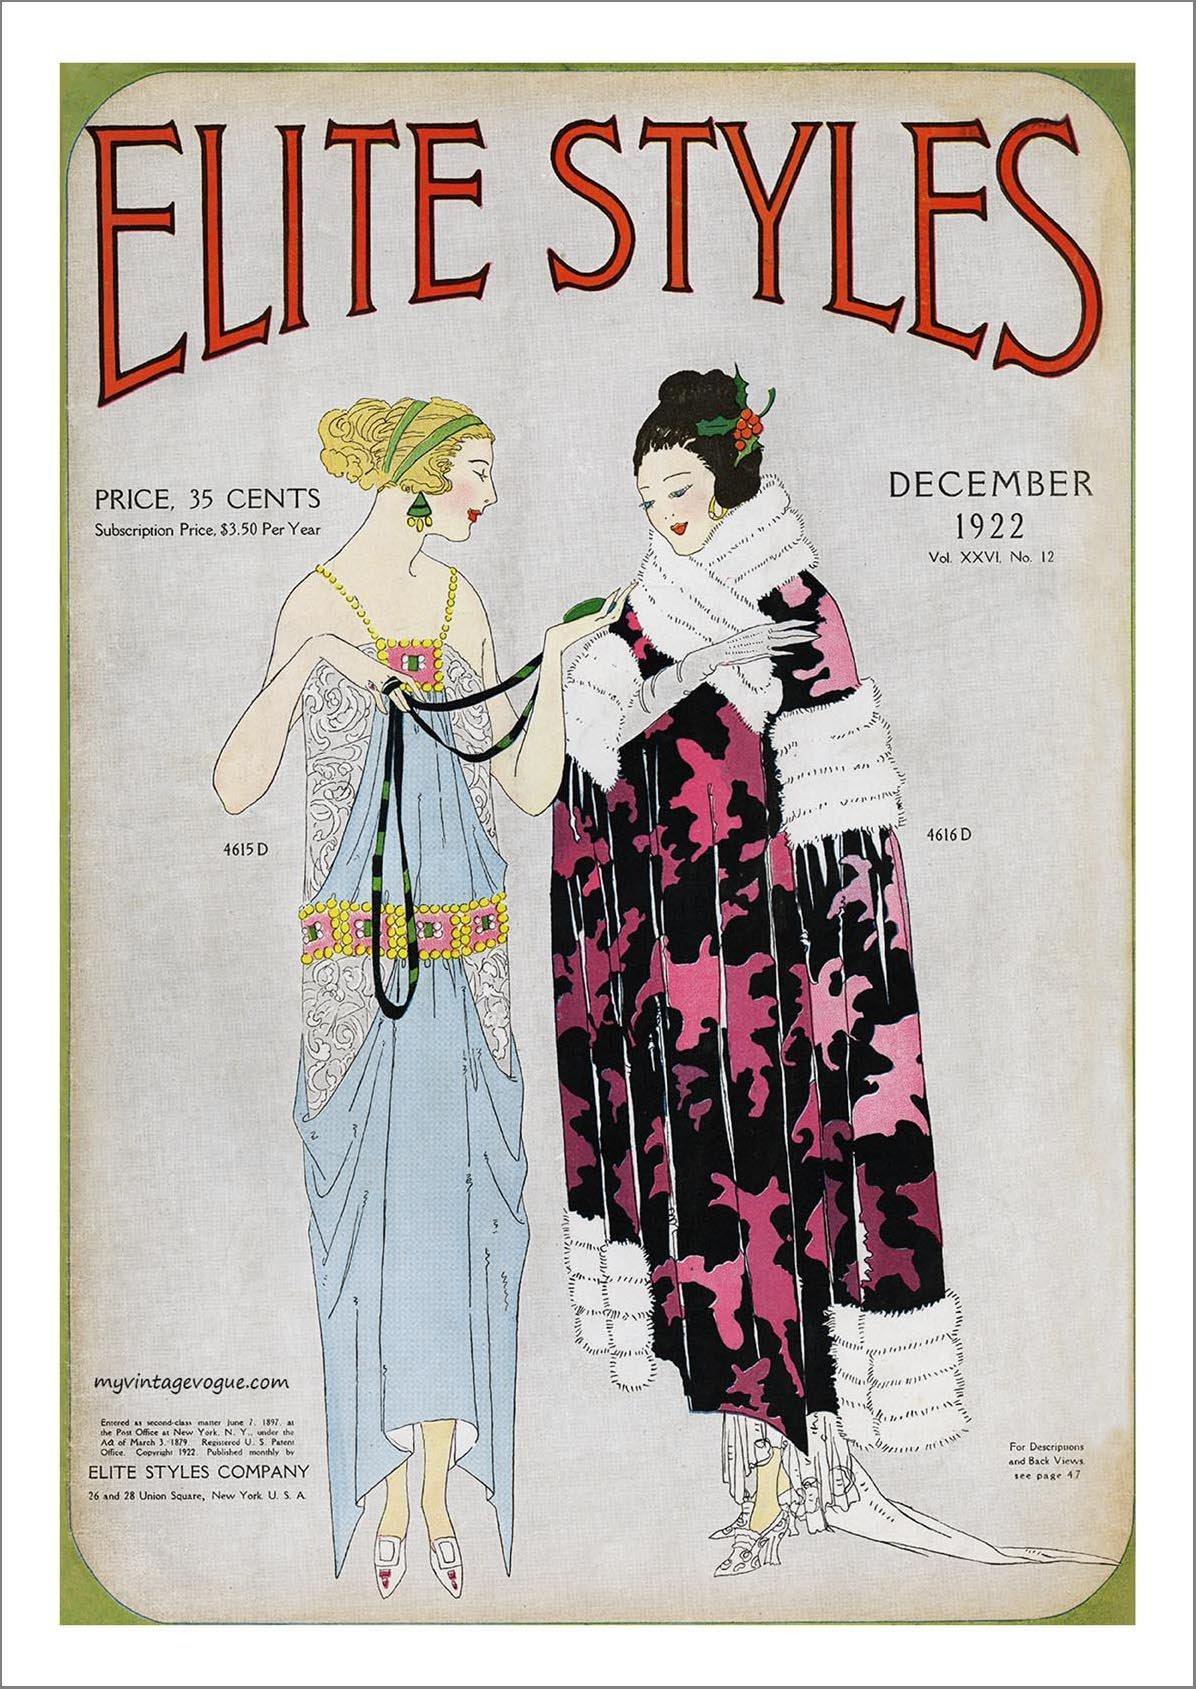 ELITE STYLES POSTER: Vintage Fashion Cover Art - Pimlico Prints